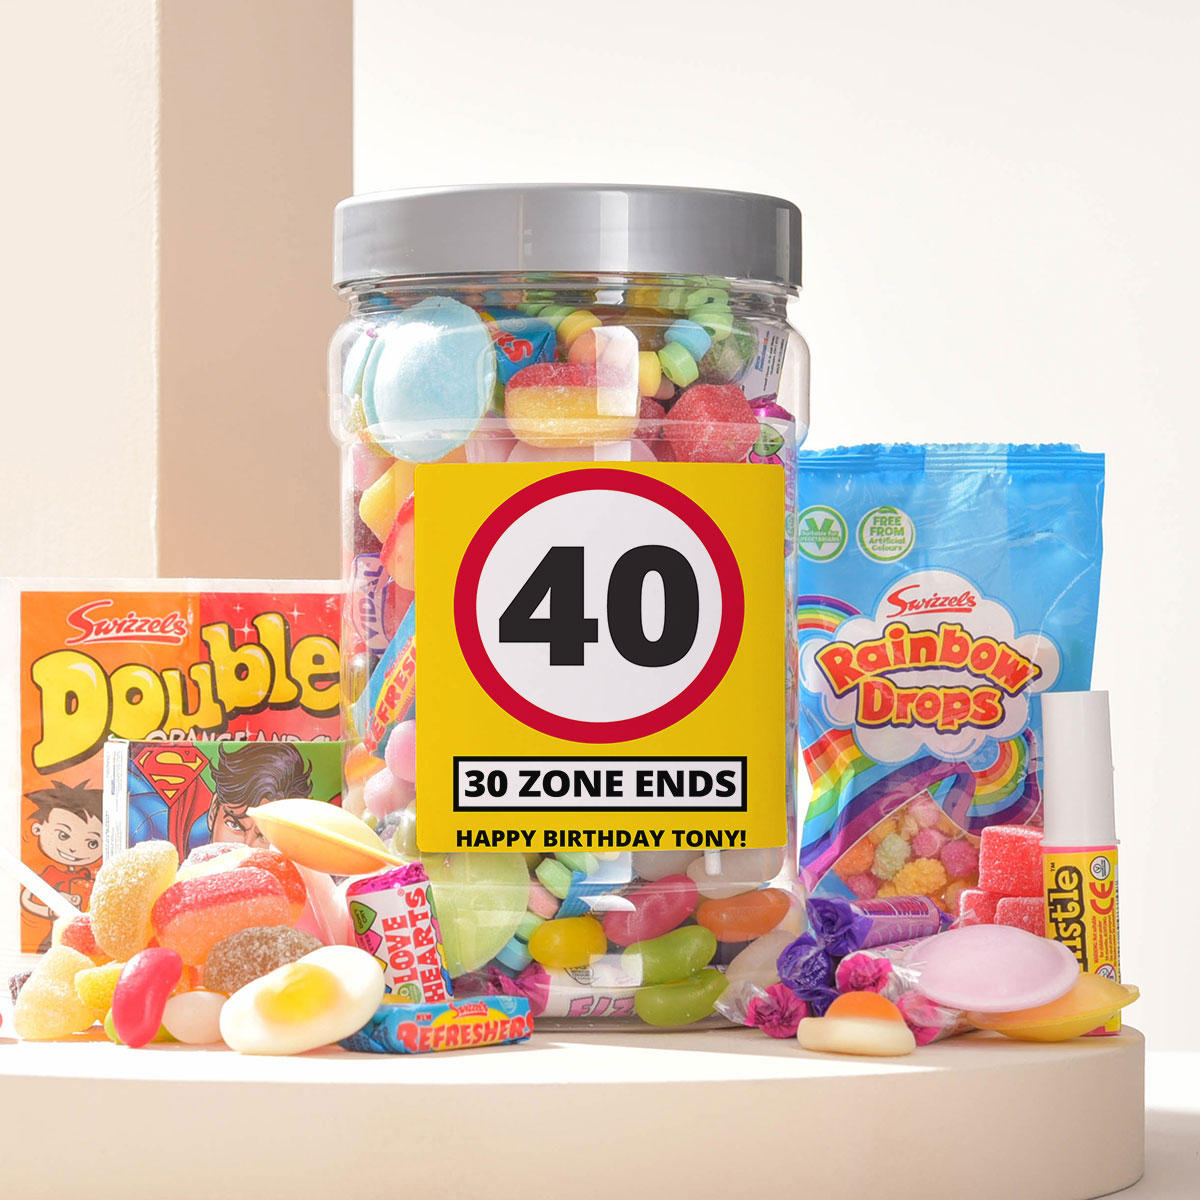 Personalised Retro Sweet Jar - Zone Ends 40